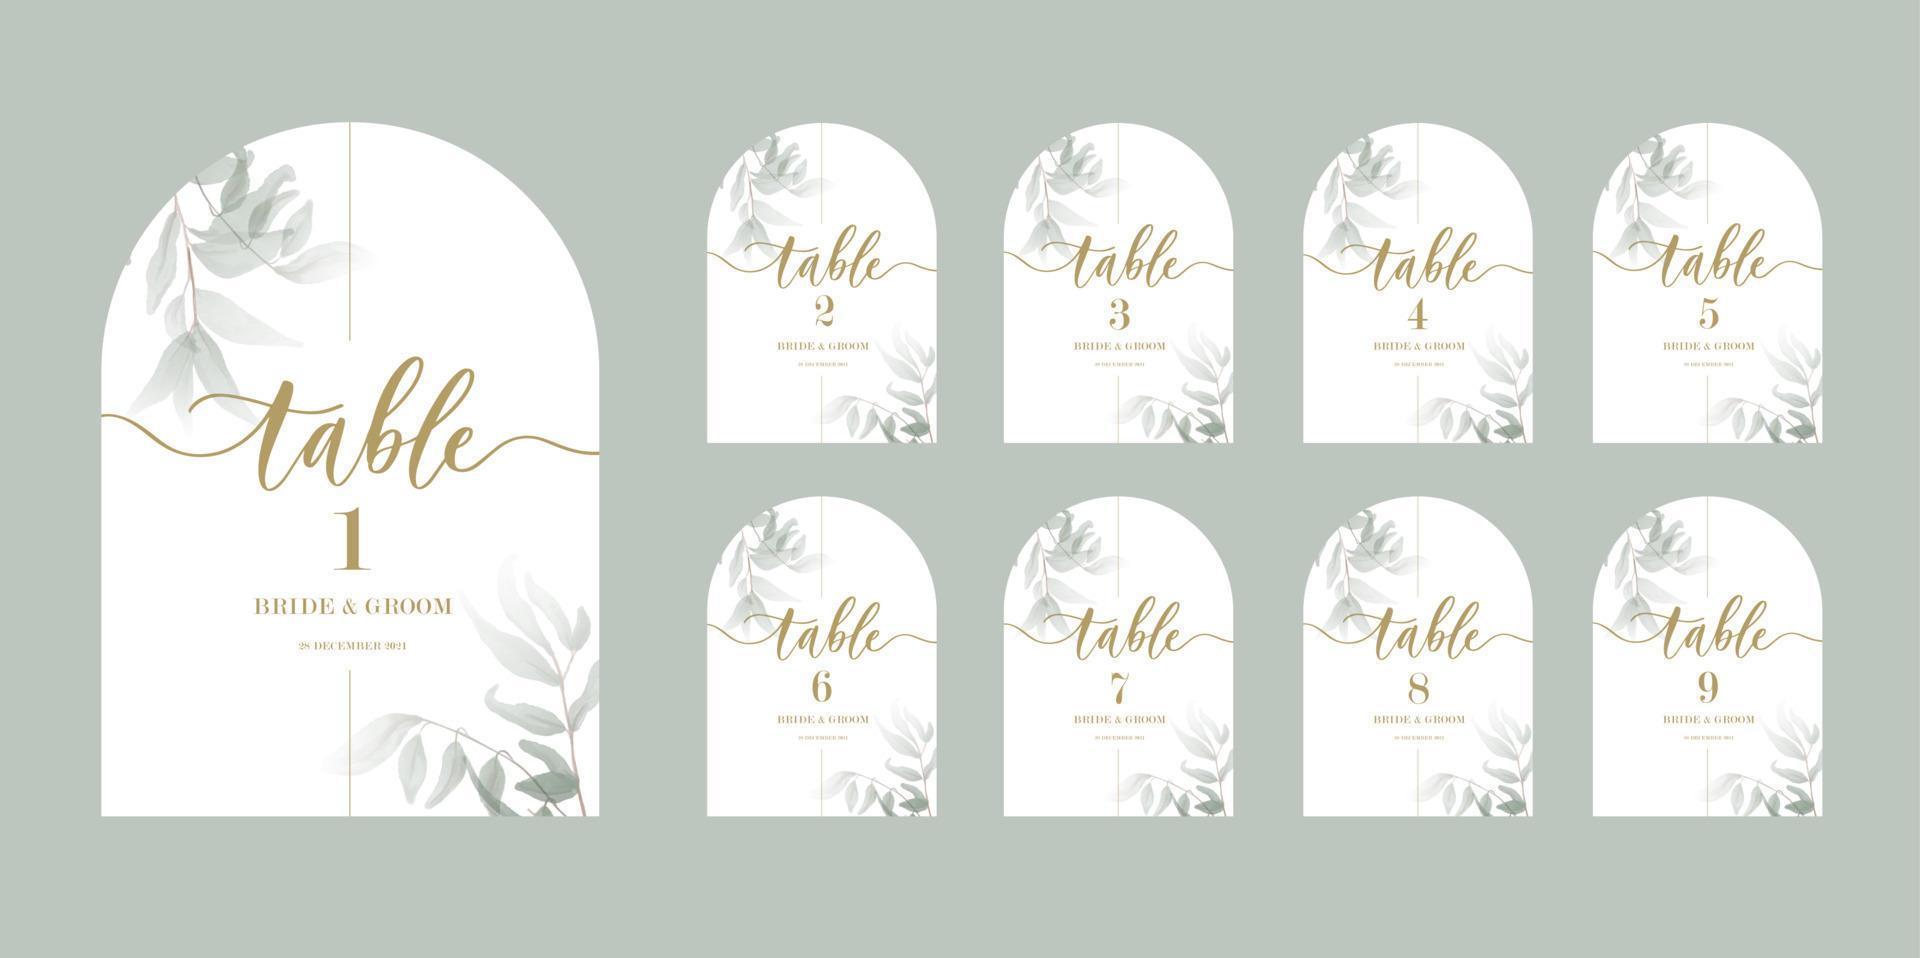 Invitados de caligrafía de boda tarjetas de asiento, plantilla con números y hojas verdes. vector